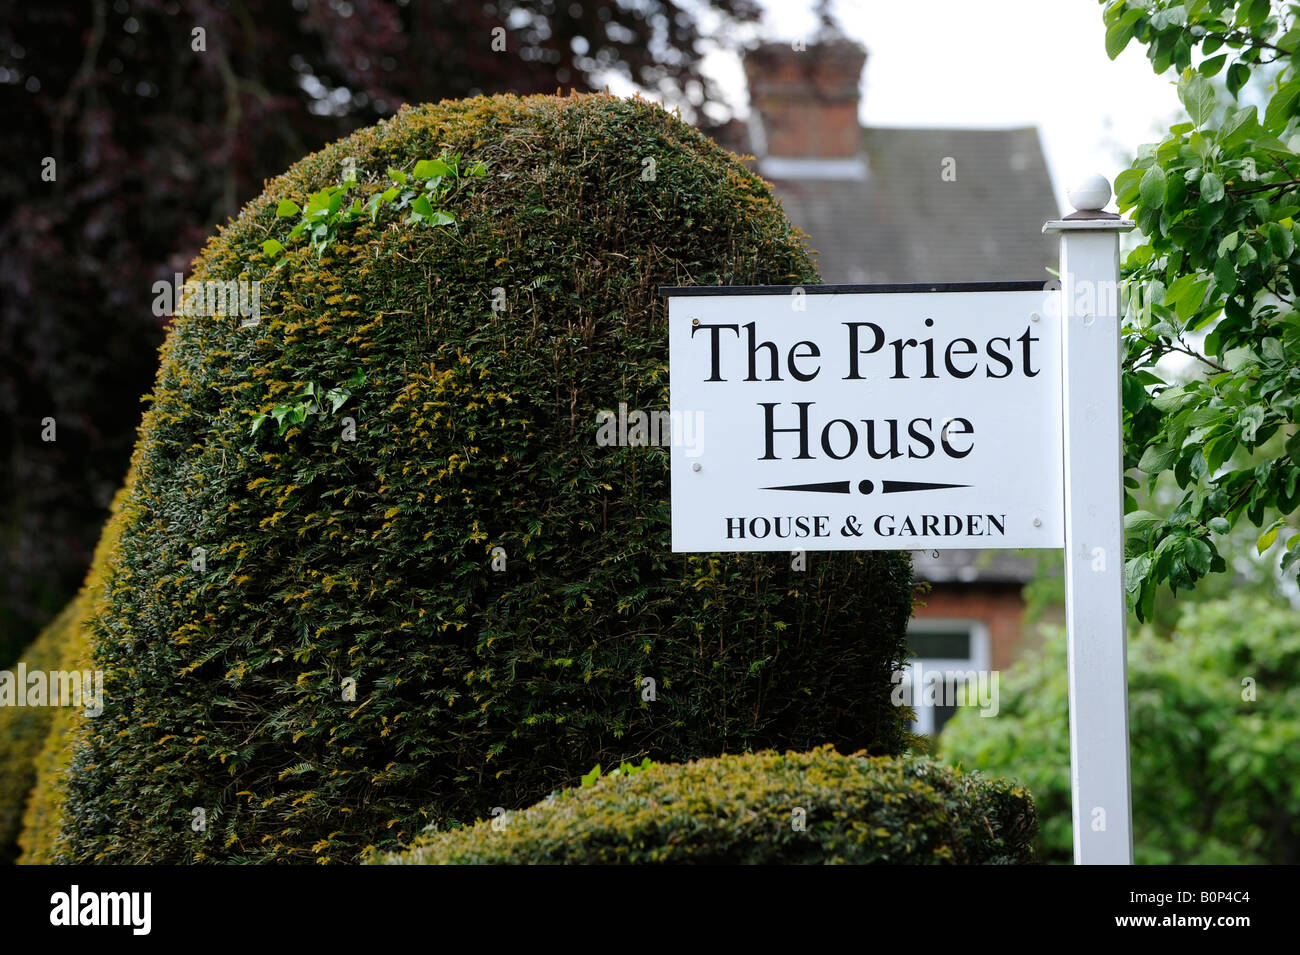 El Priest House en West Hoathly en el bosque de Ashdown, East Sussex. Fotografía por Jim Holden. Foto de stock